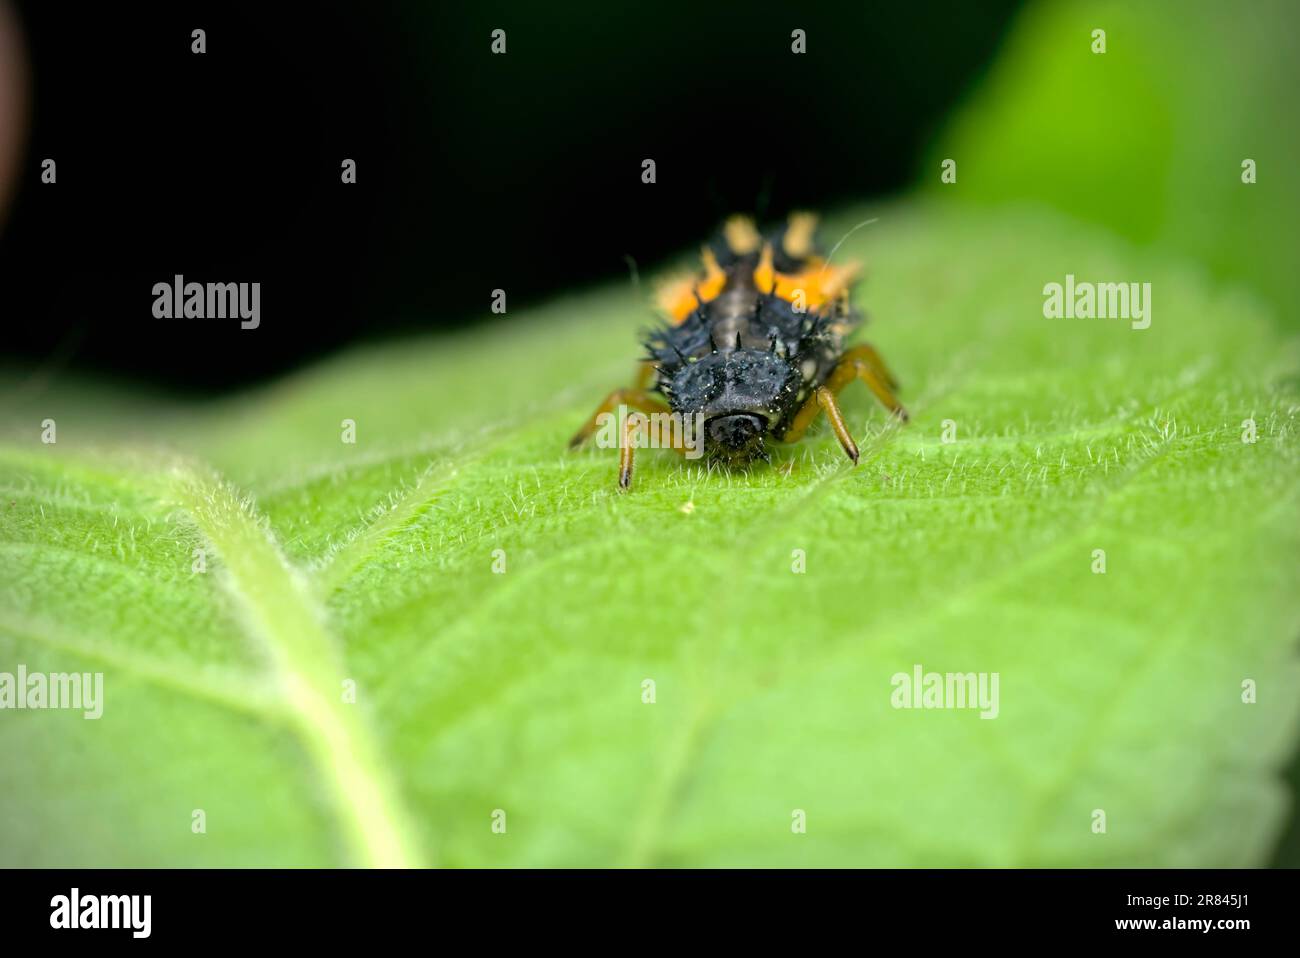 Larve einer asiatischen Käferin (Harmonia axyridis), die auf einem Blatt krabbelt, Makrofotografie, Insekten, Nahaufnahme, Natur, Biologische Vielfalt Stockfoto